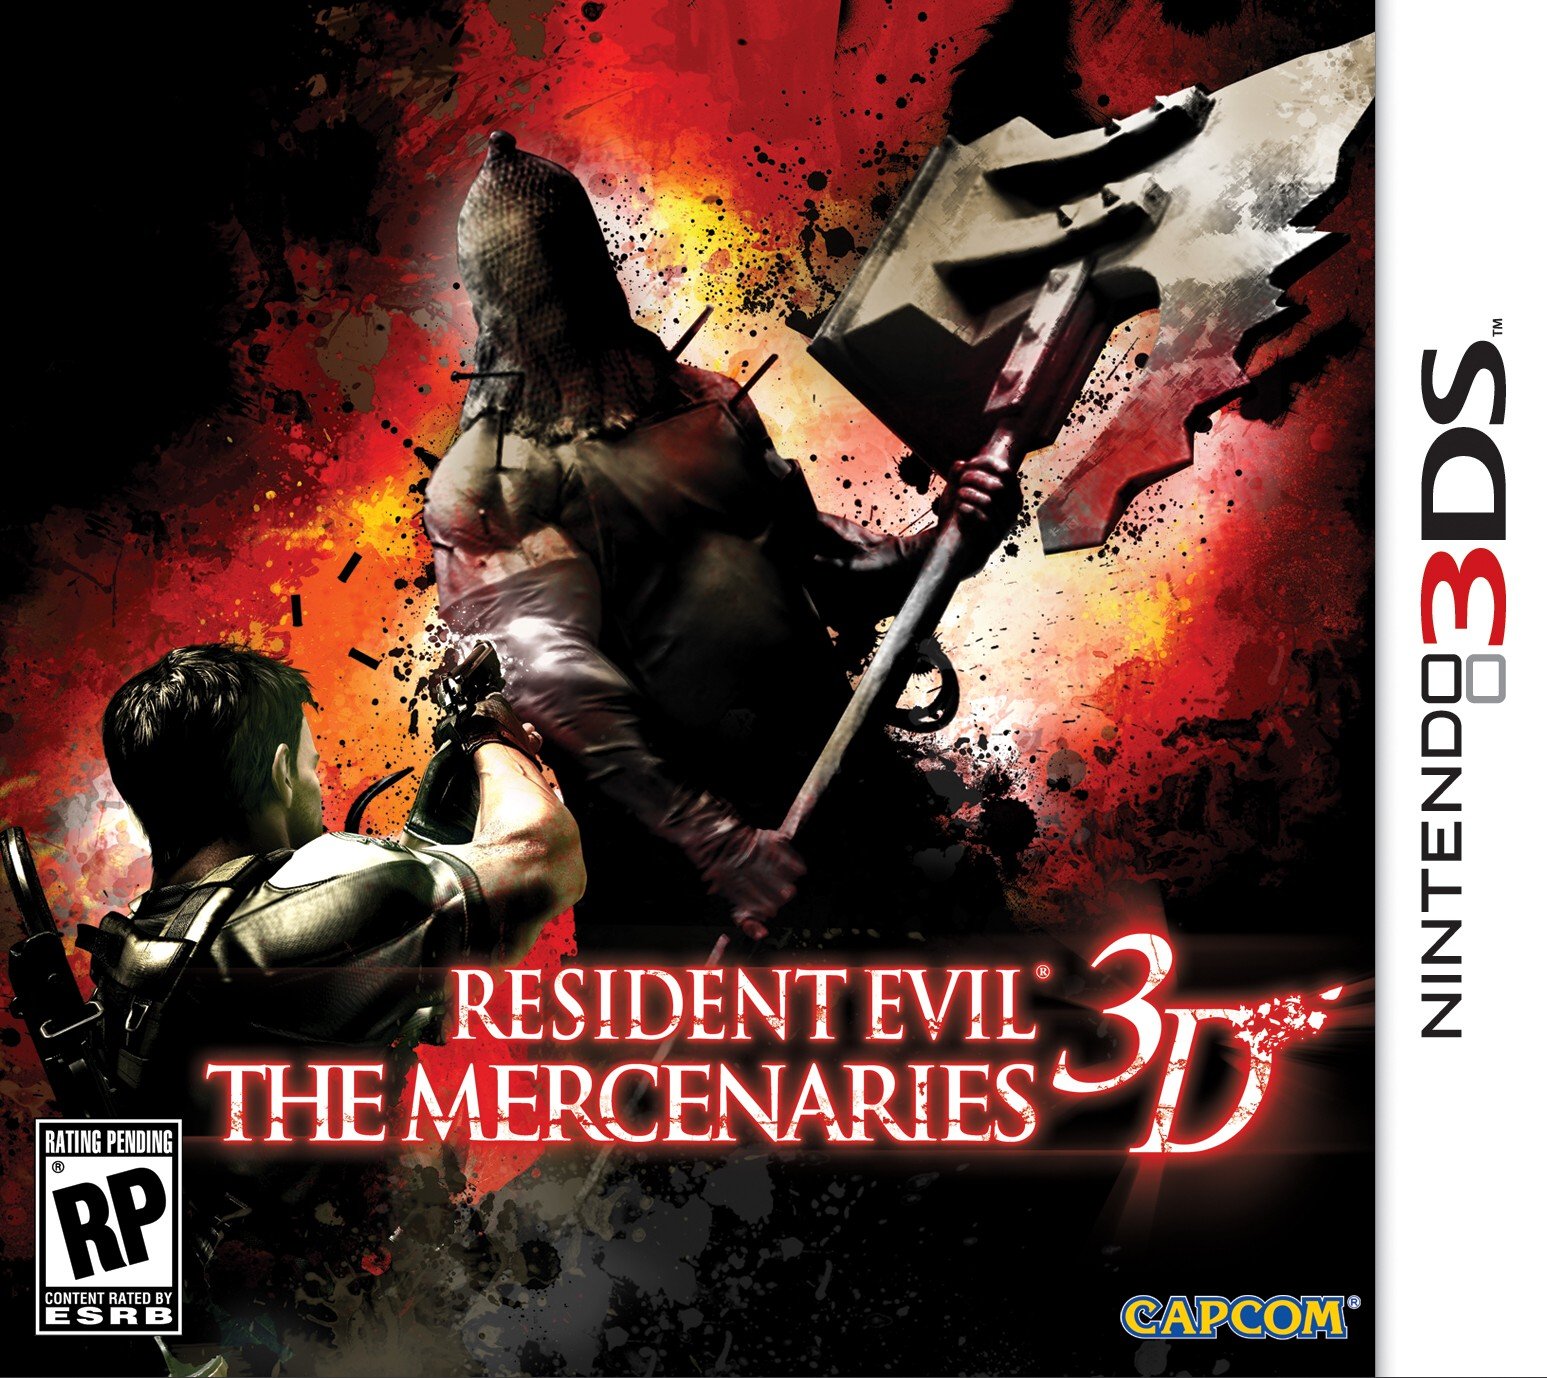 Image of Resident Evil: The Mercenaries 3D